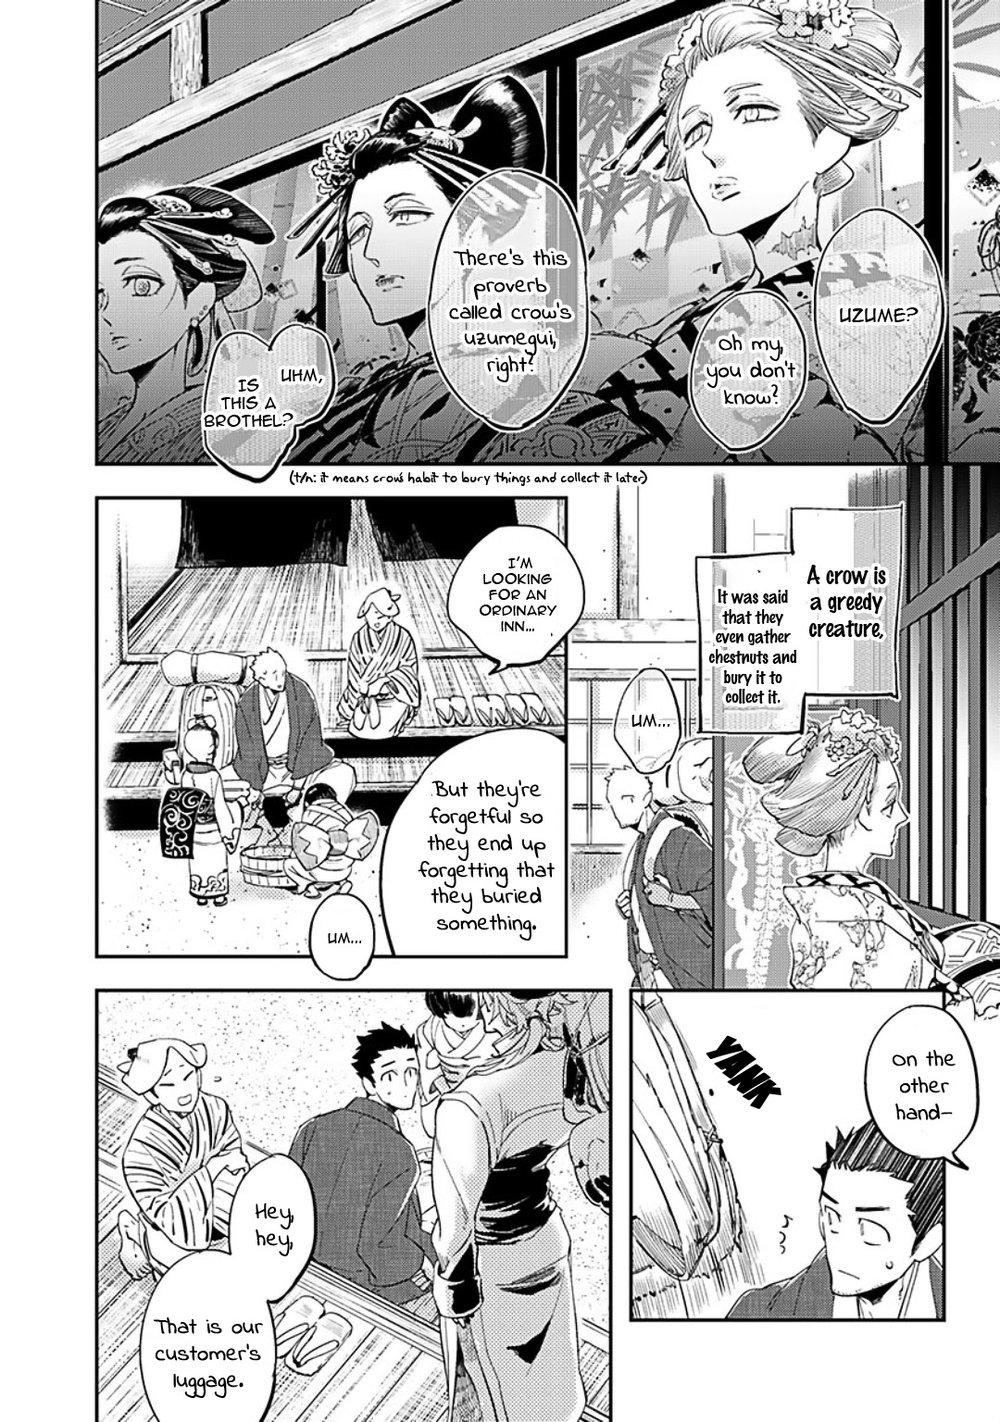 Spooning Uzumegui Hardcore - Page 2